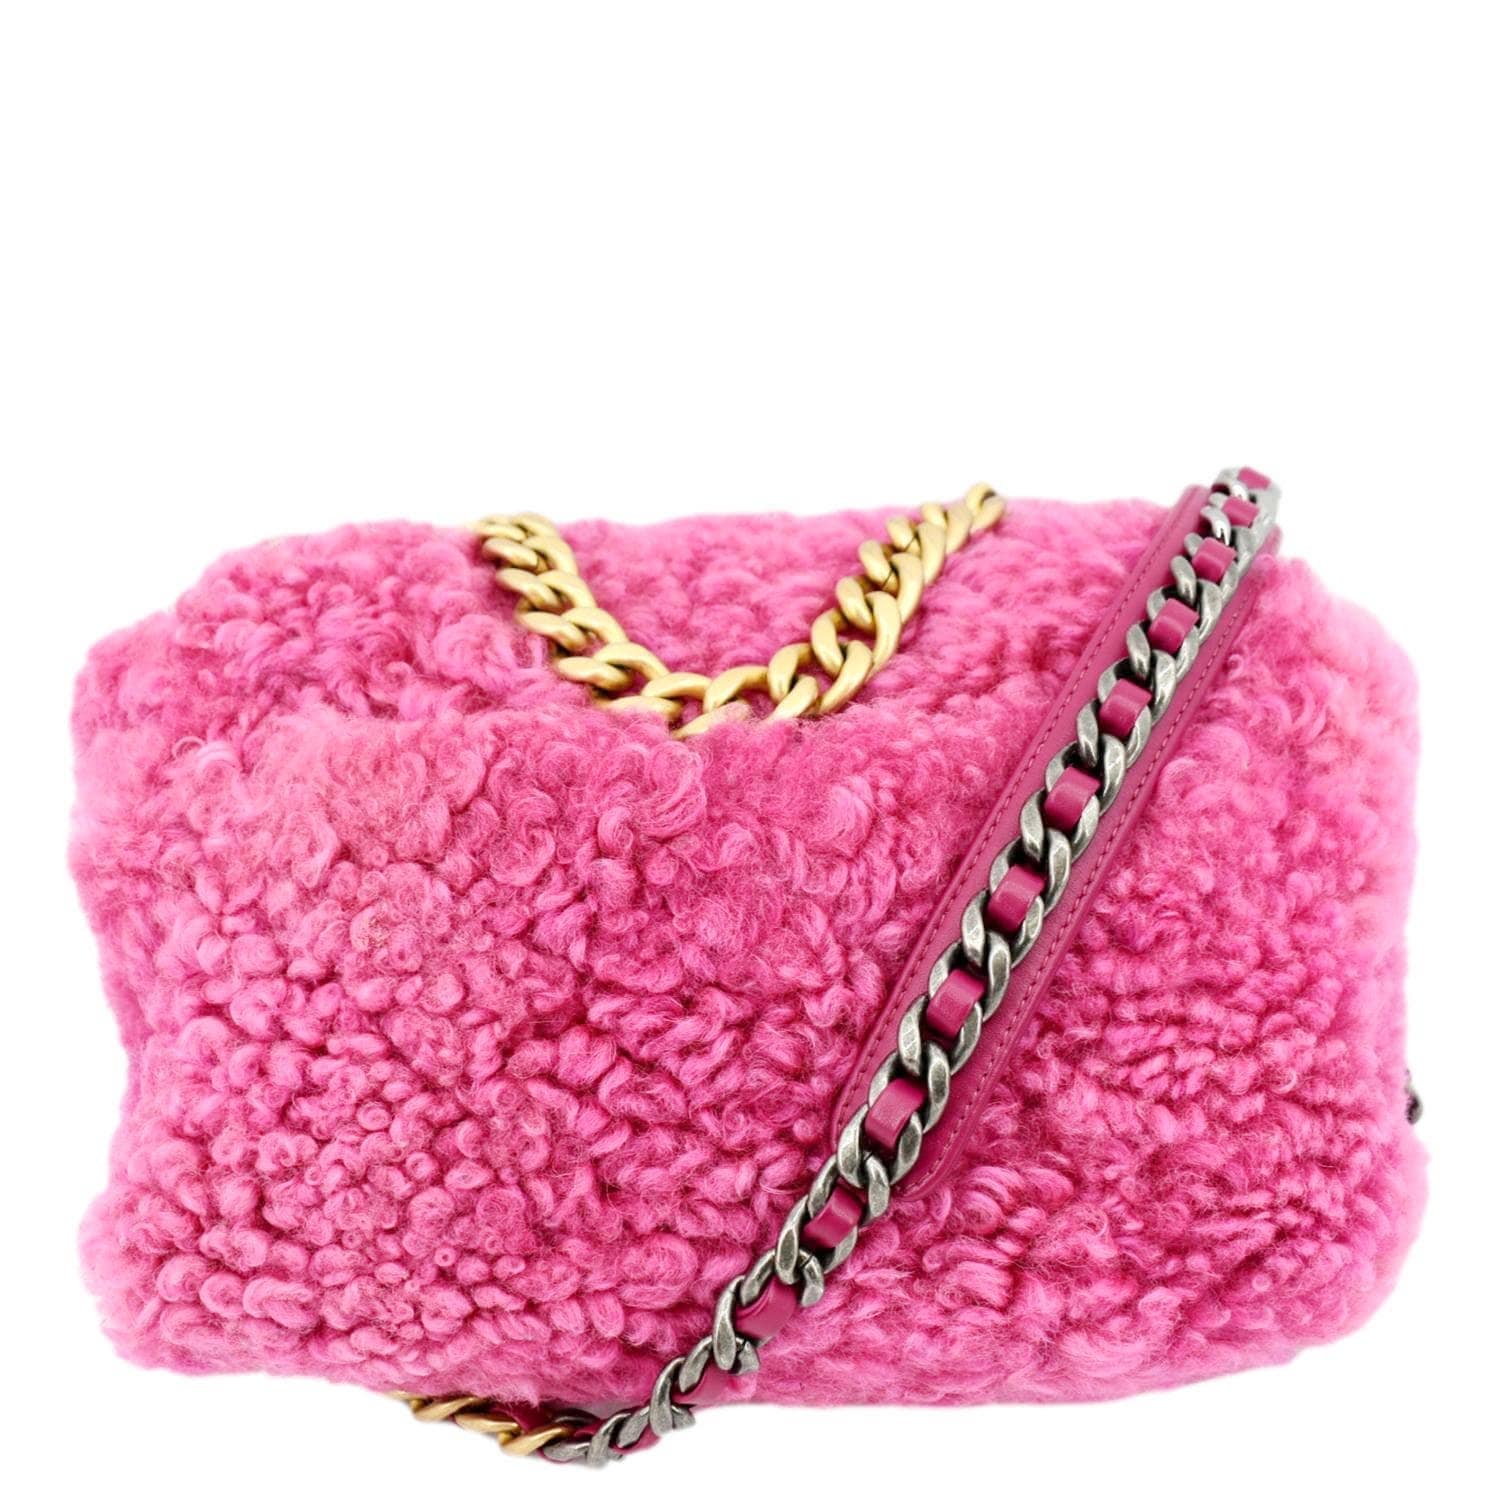 Chanel 19 Flap Shearling Sheepskin Shoulder Bag Pink